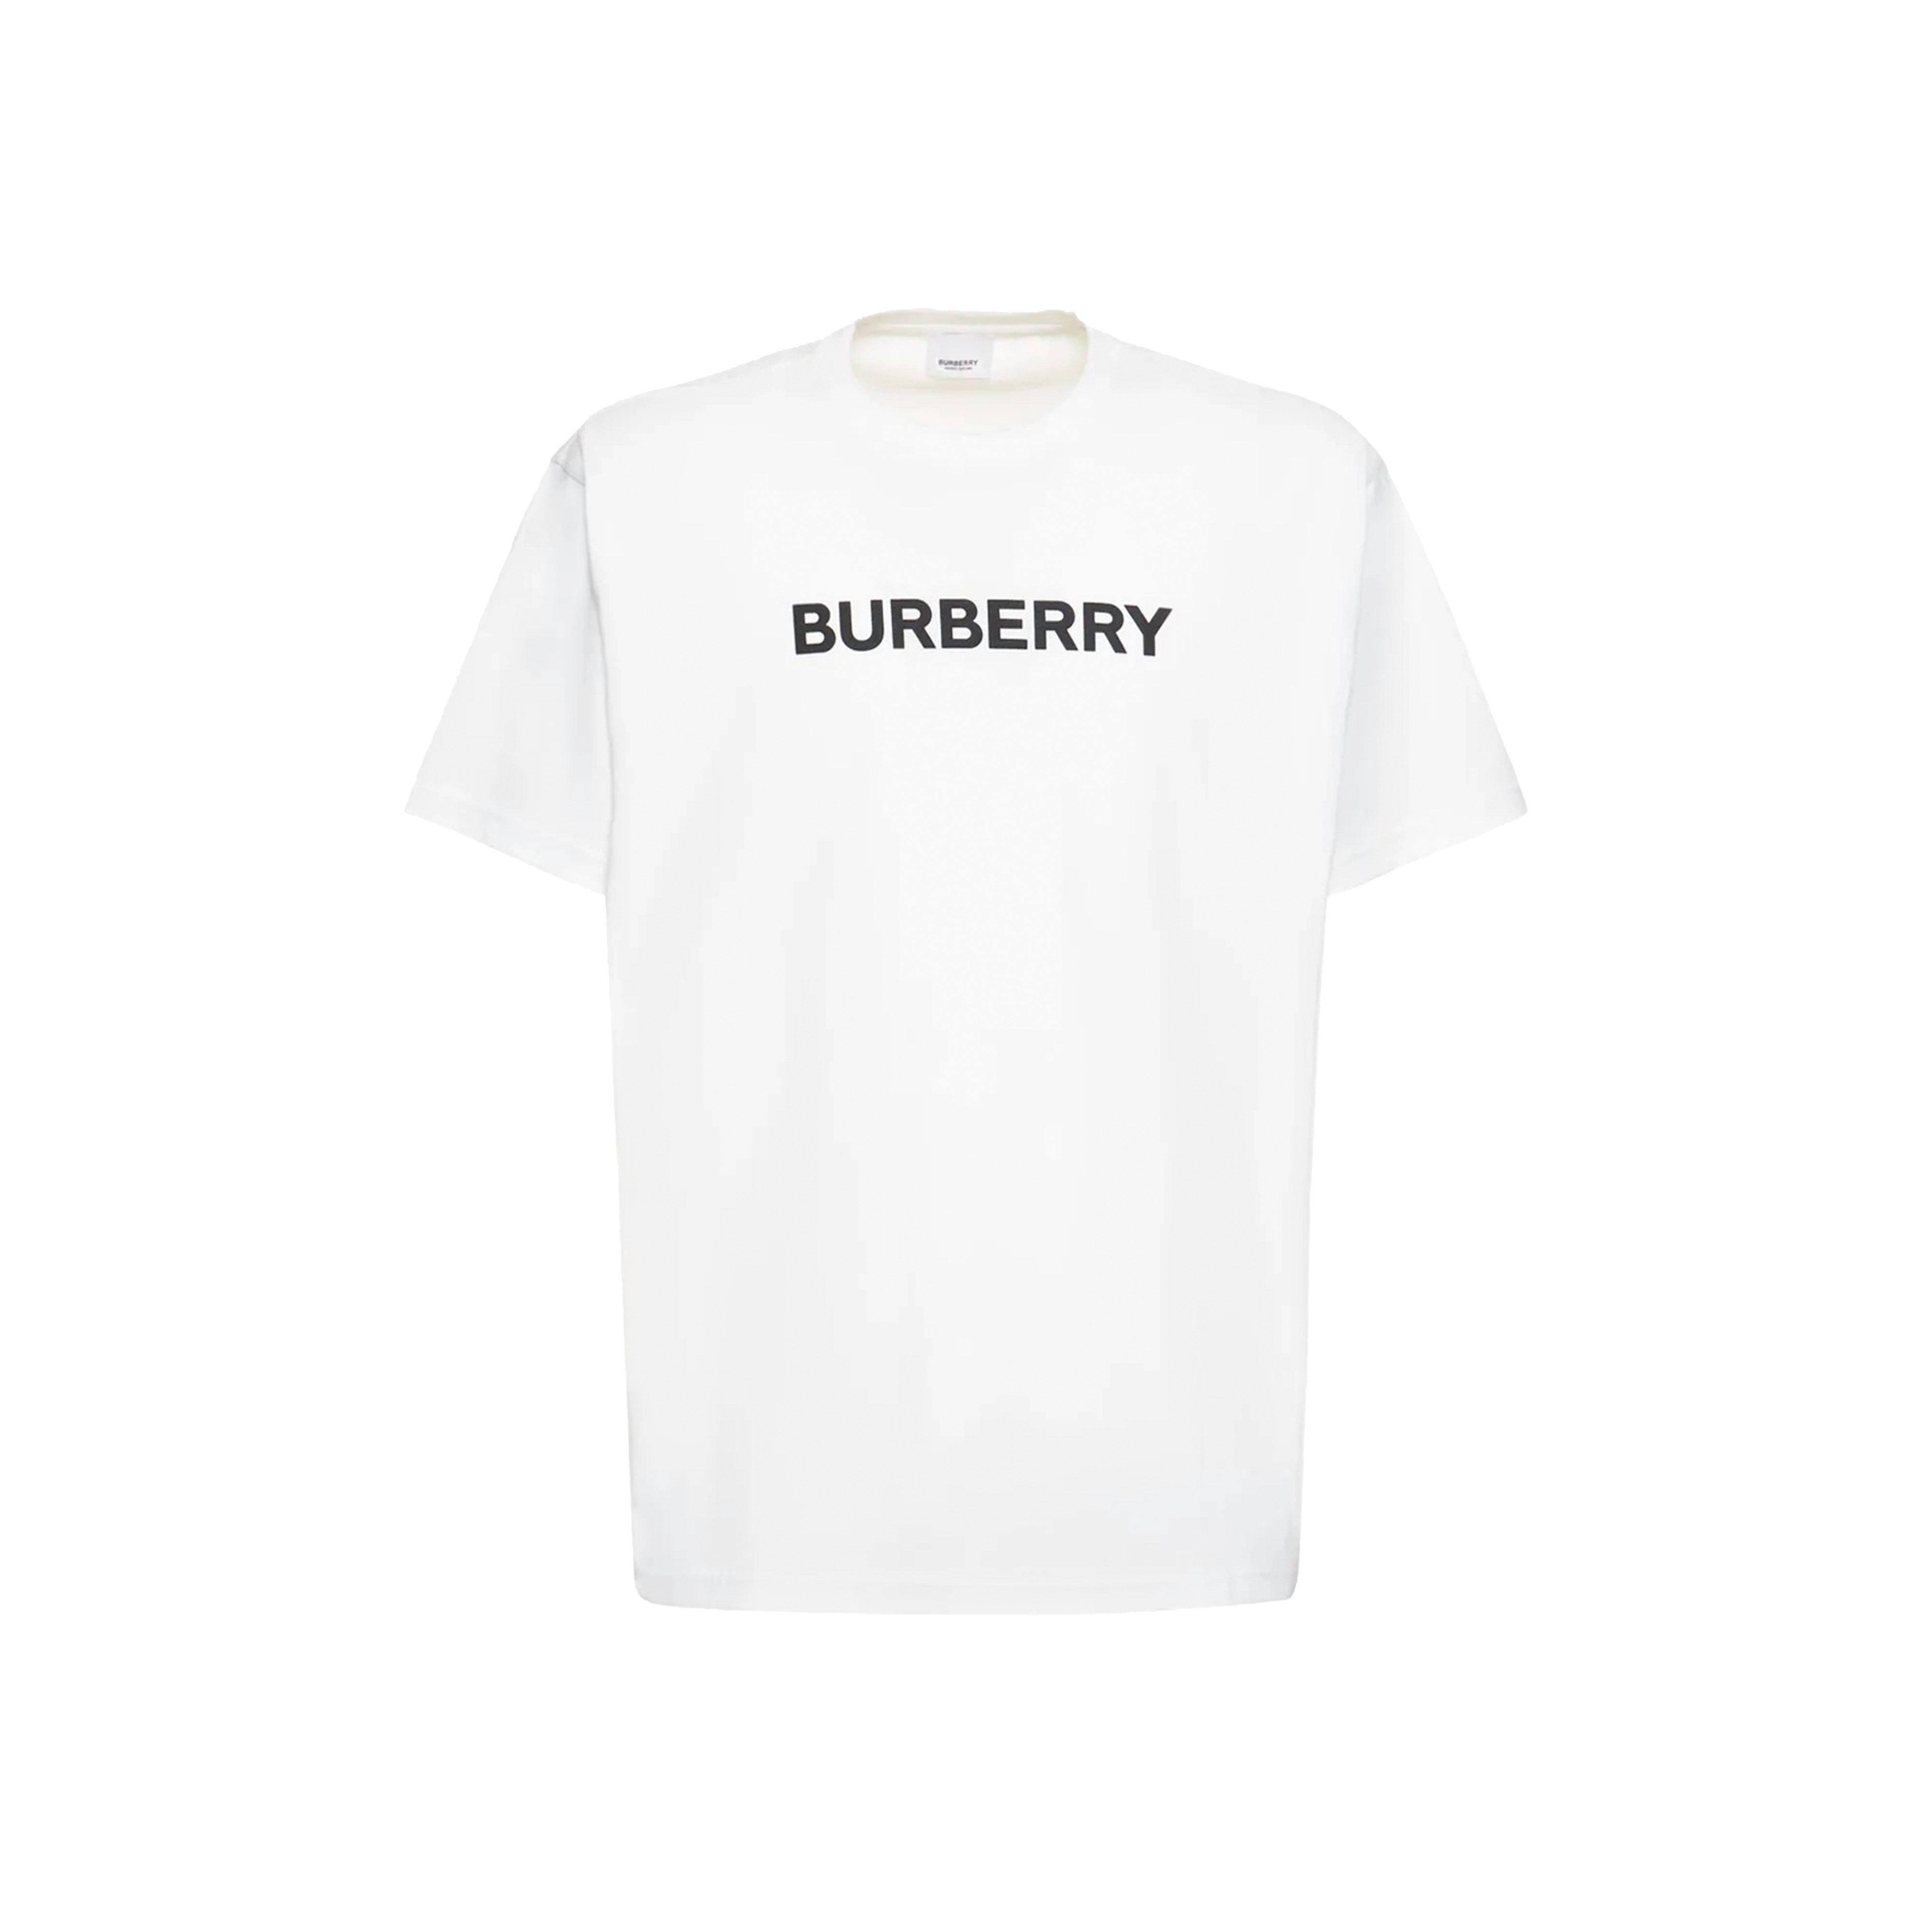 Burberry - Harriston logo tee white